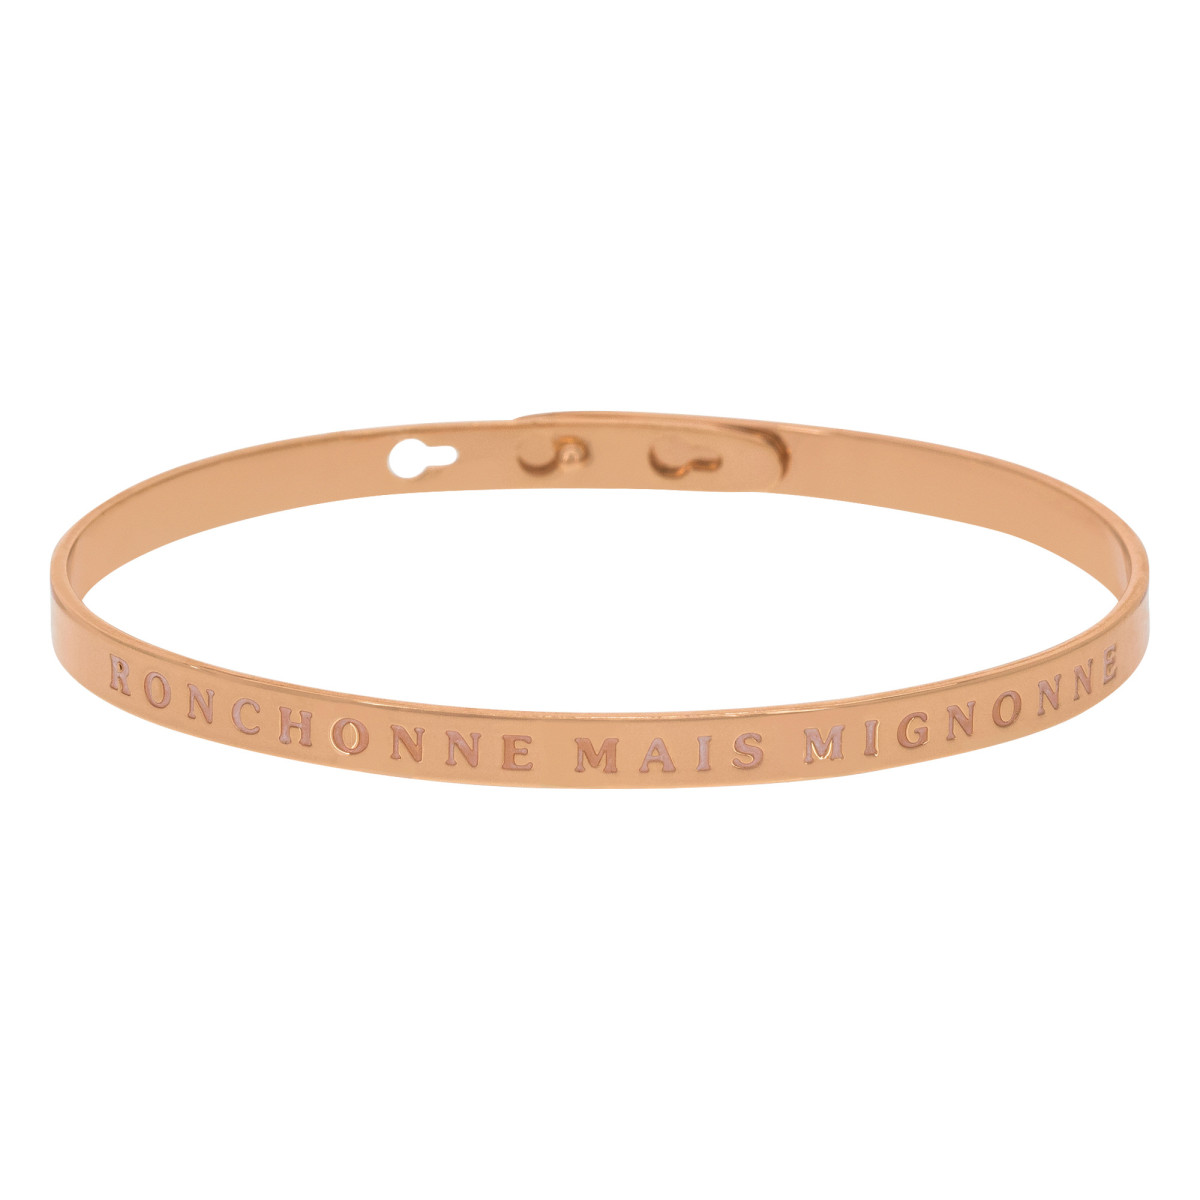 "RONCHONNE MAIS MIGNONNE" bracelet jonc rosé à message